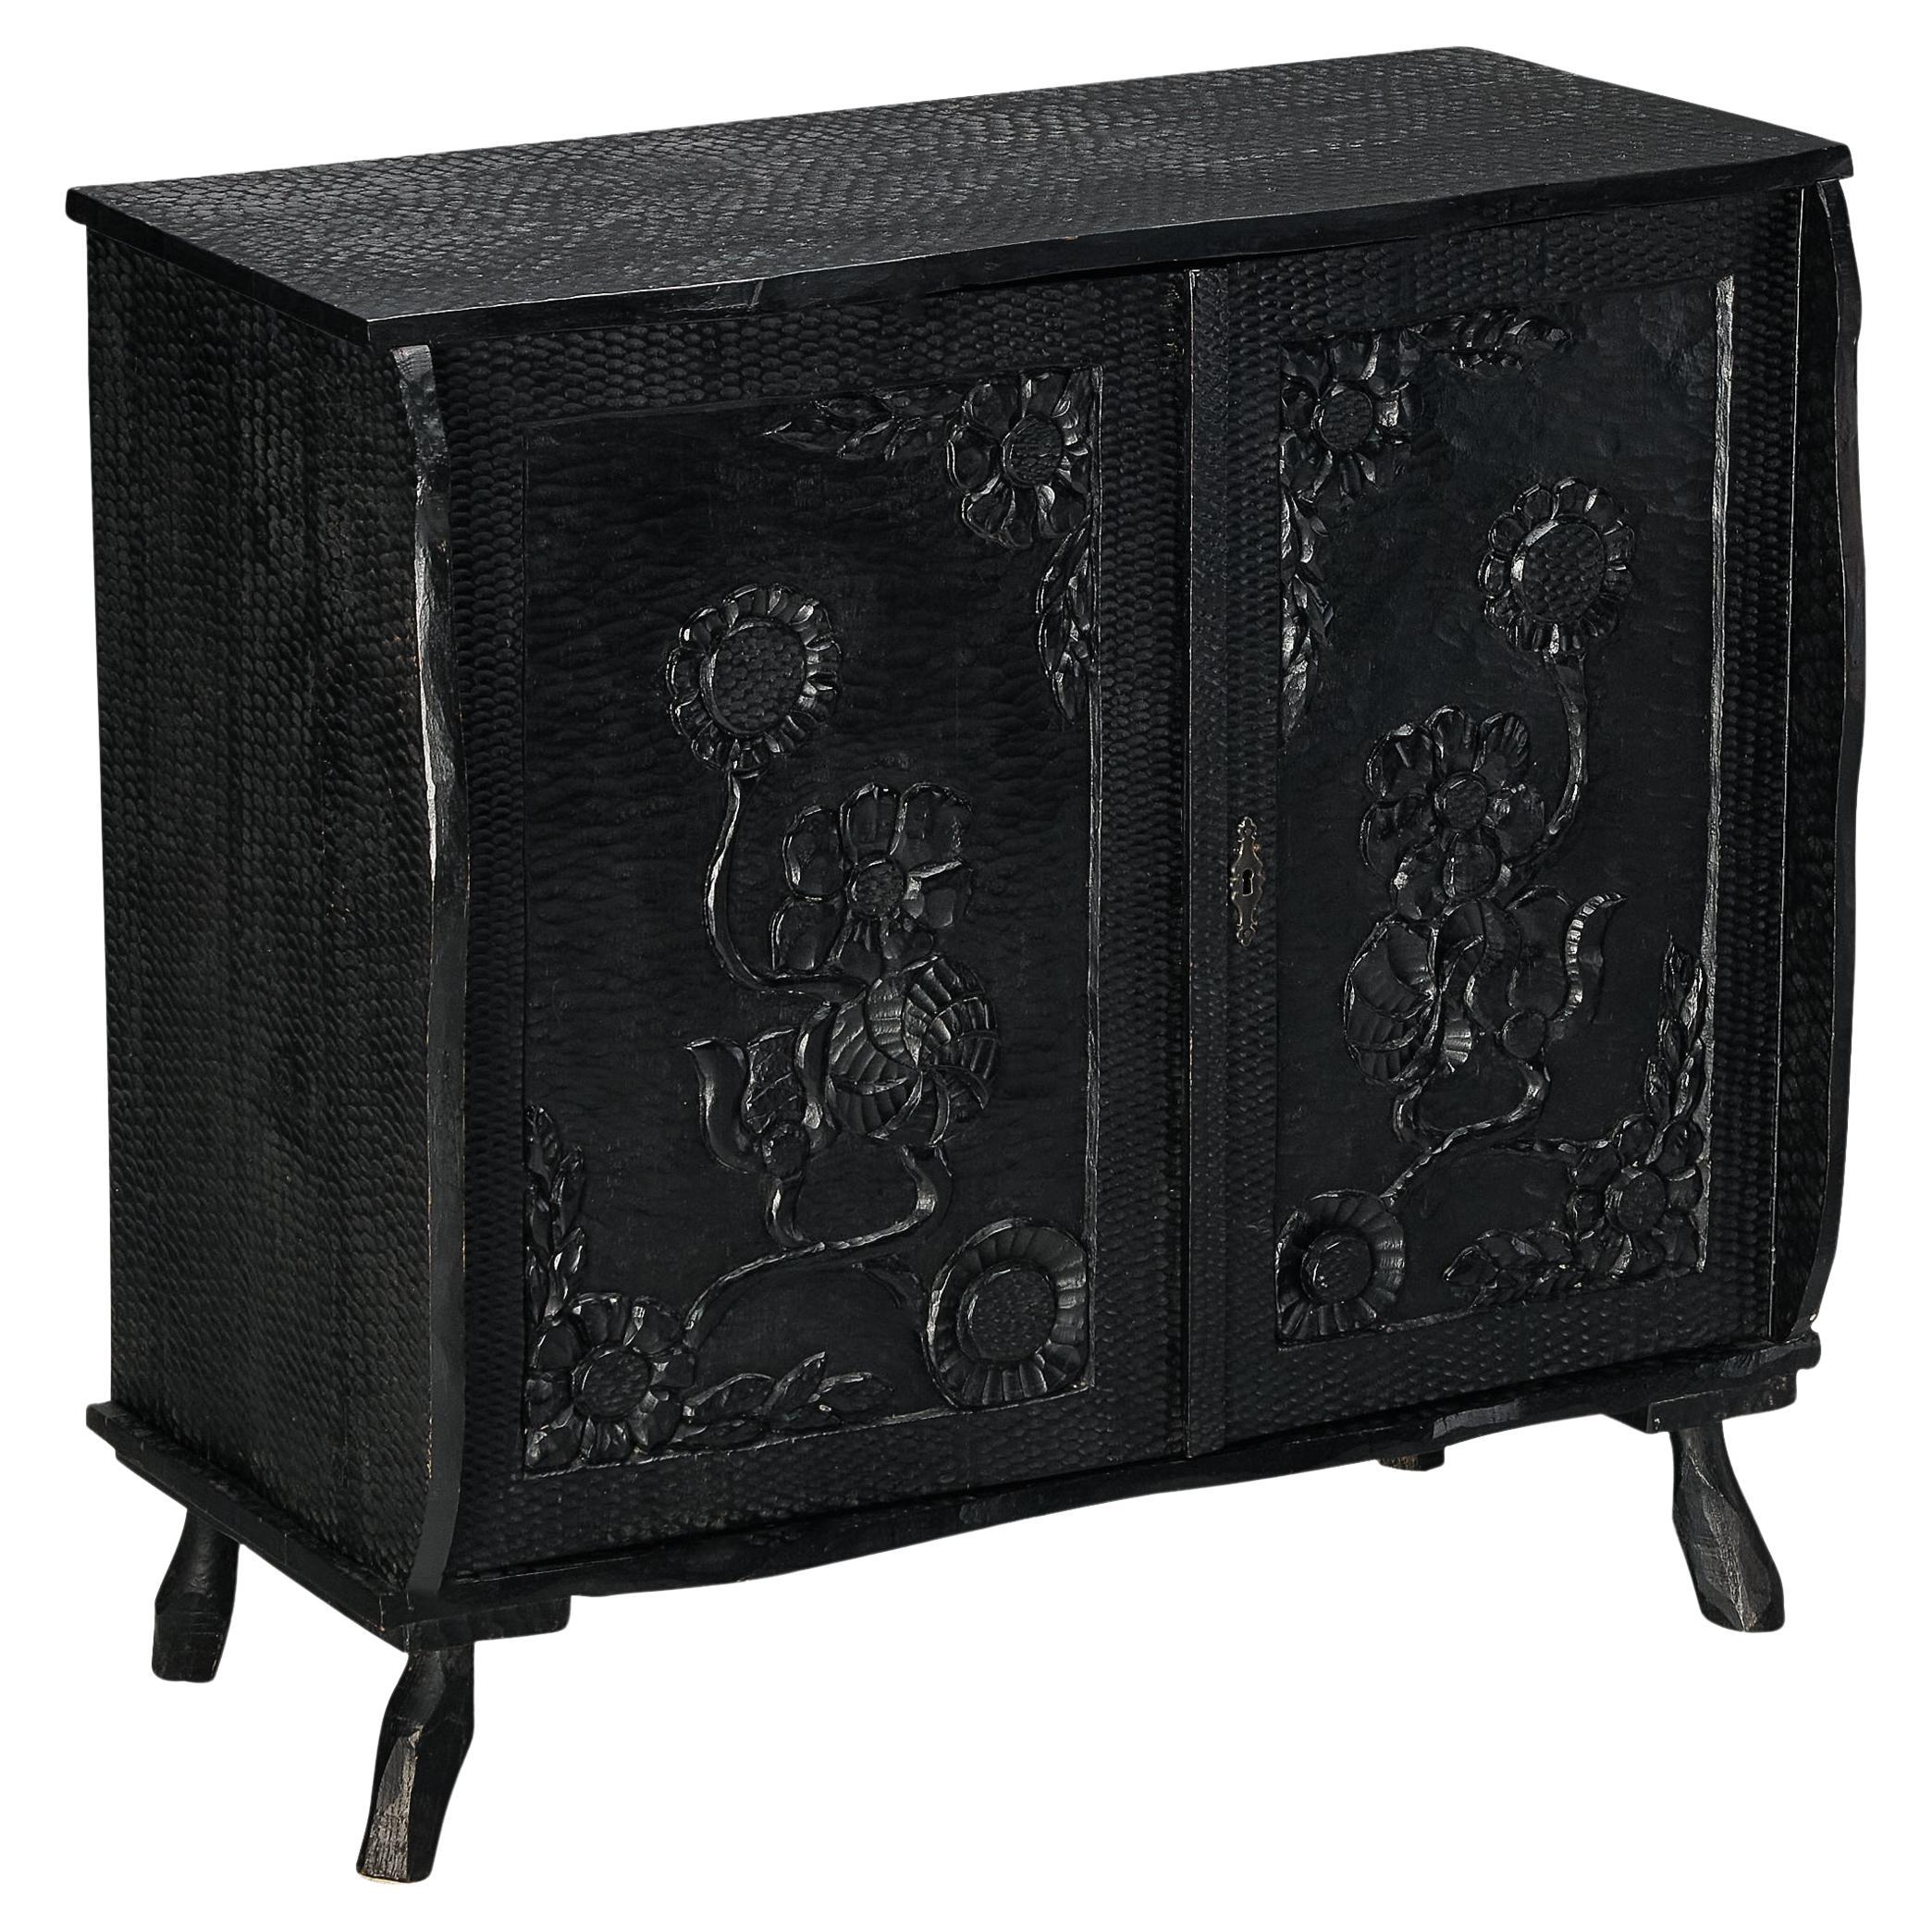 Cabinet sculptural en Wood Wood laqué noir avec Carved Decorative 